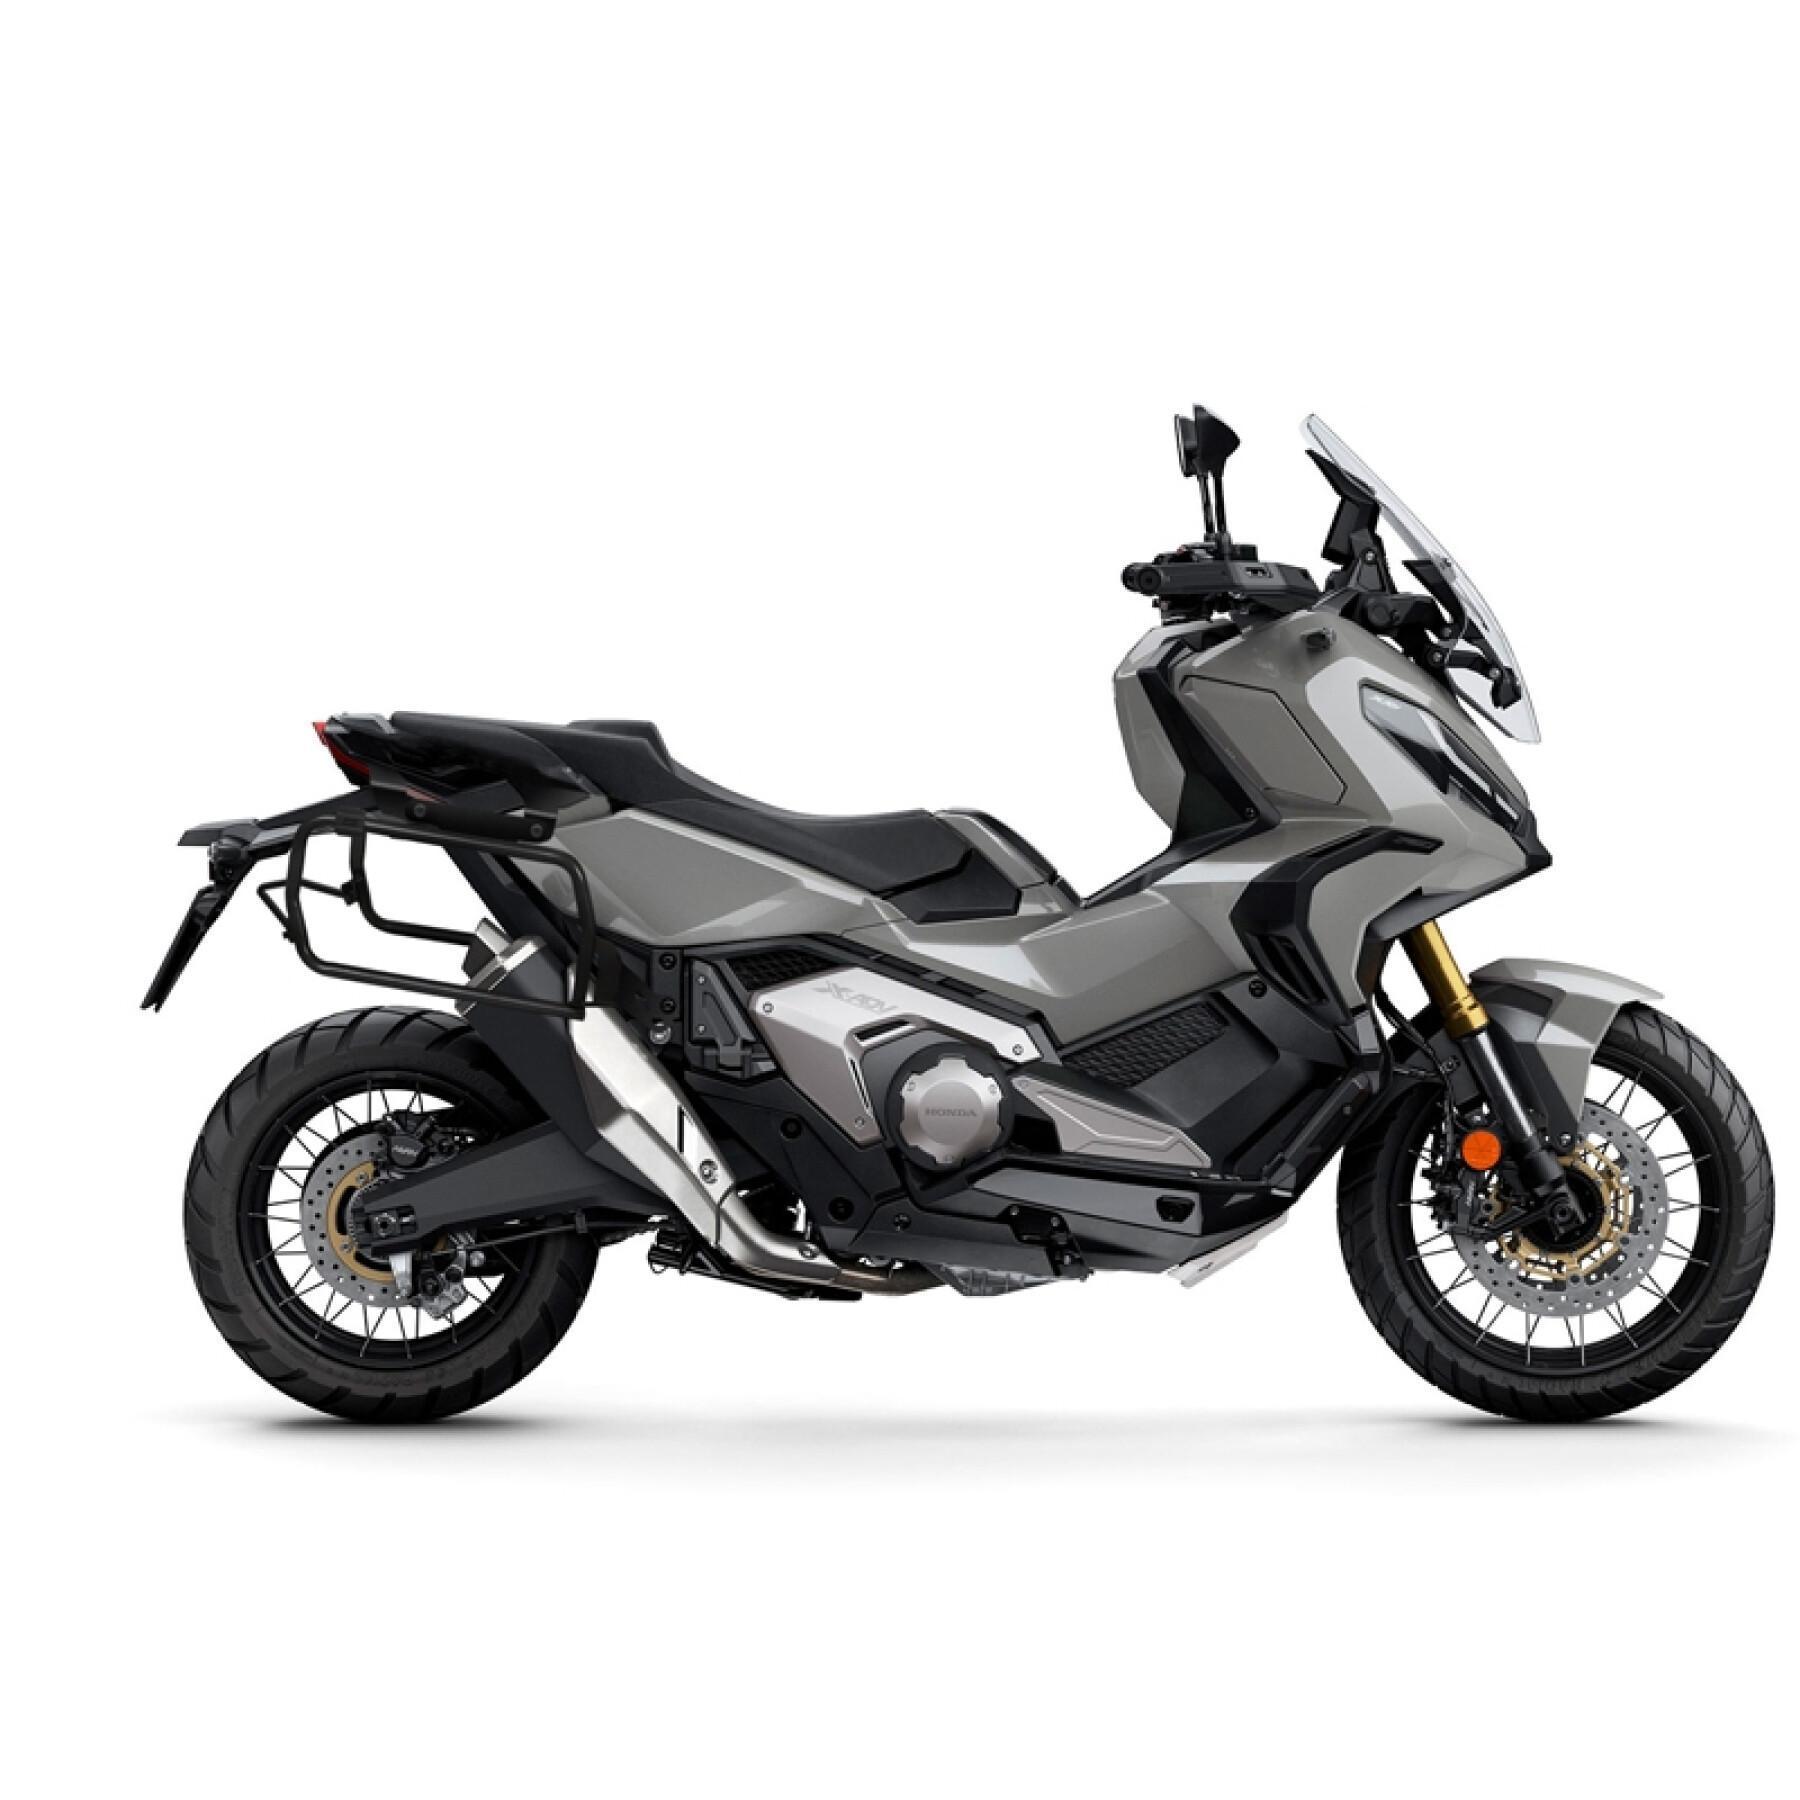 Sidostöd för motorcykel Shad 4P System Honda X-Adv 750 2021-2020